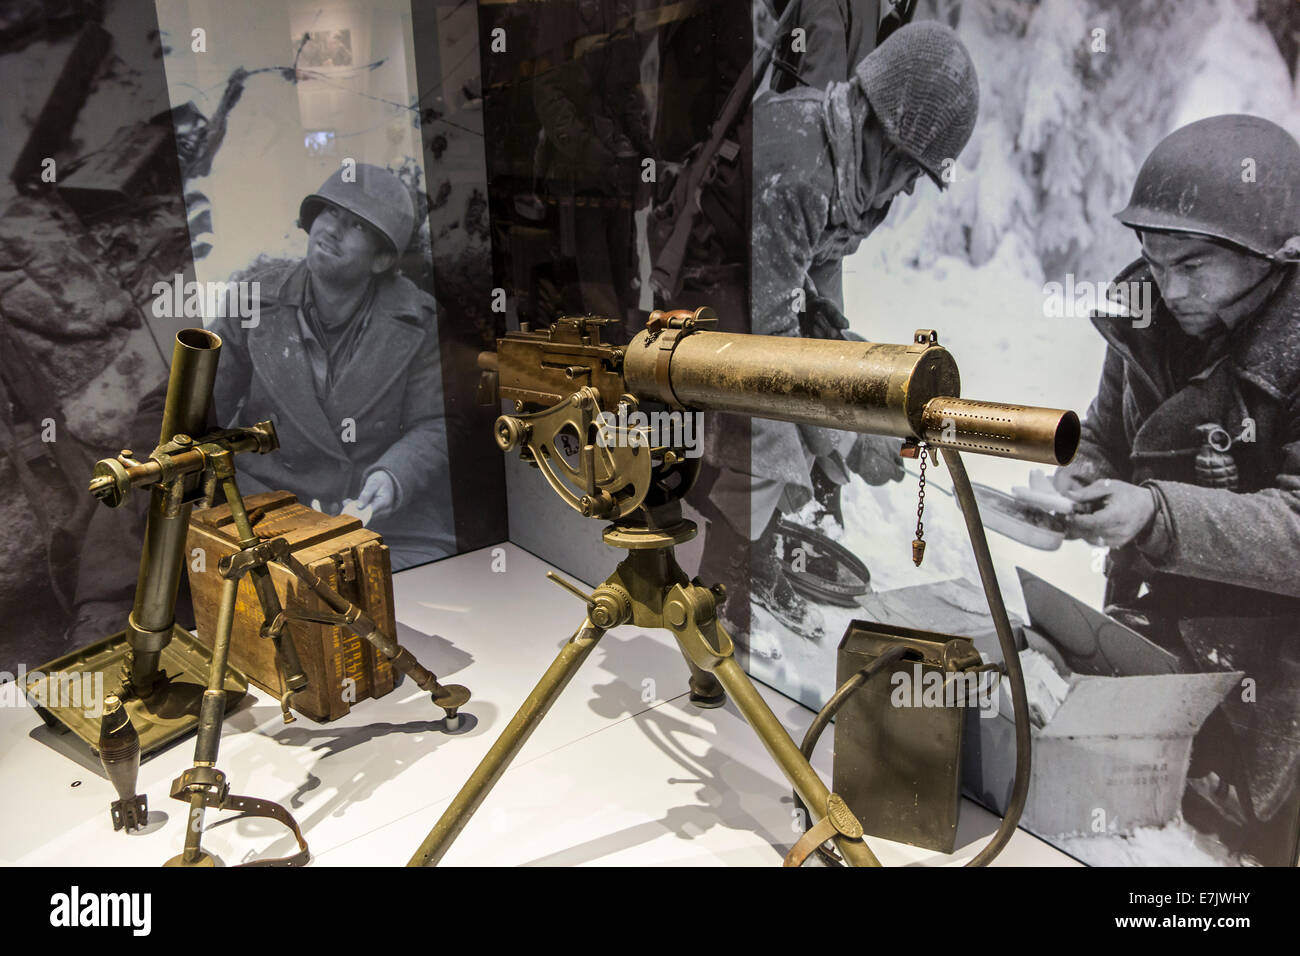 American M1917 mitrailleuse Browning M2 de mortier et le Bastogne War Museum à propos de la Seconde Guerre mondiale, Ardennes Belges, Belgique Banque D'Images